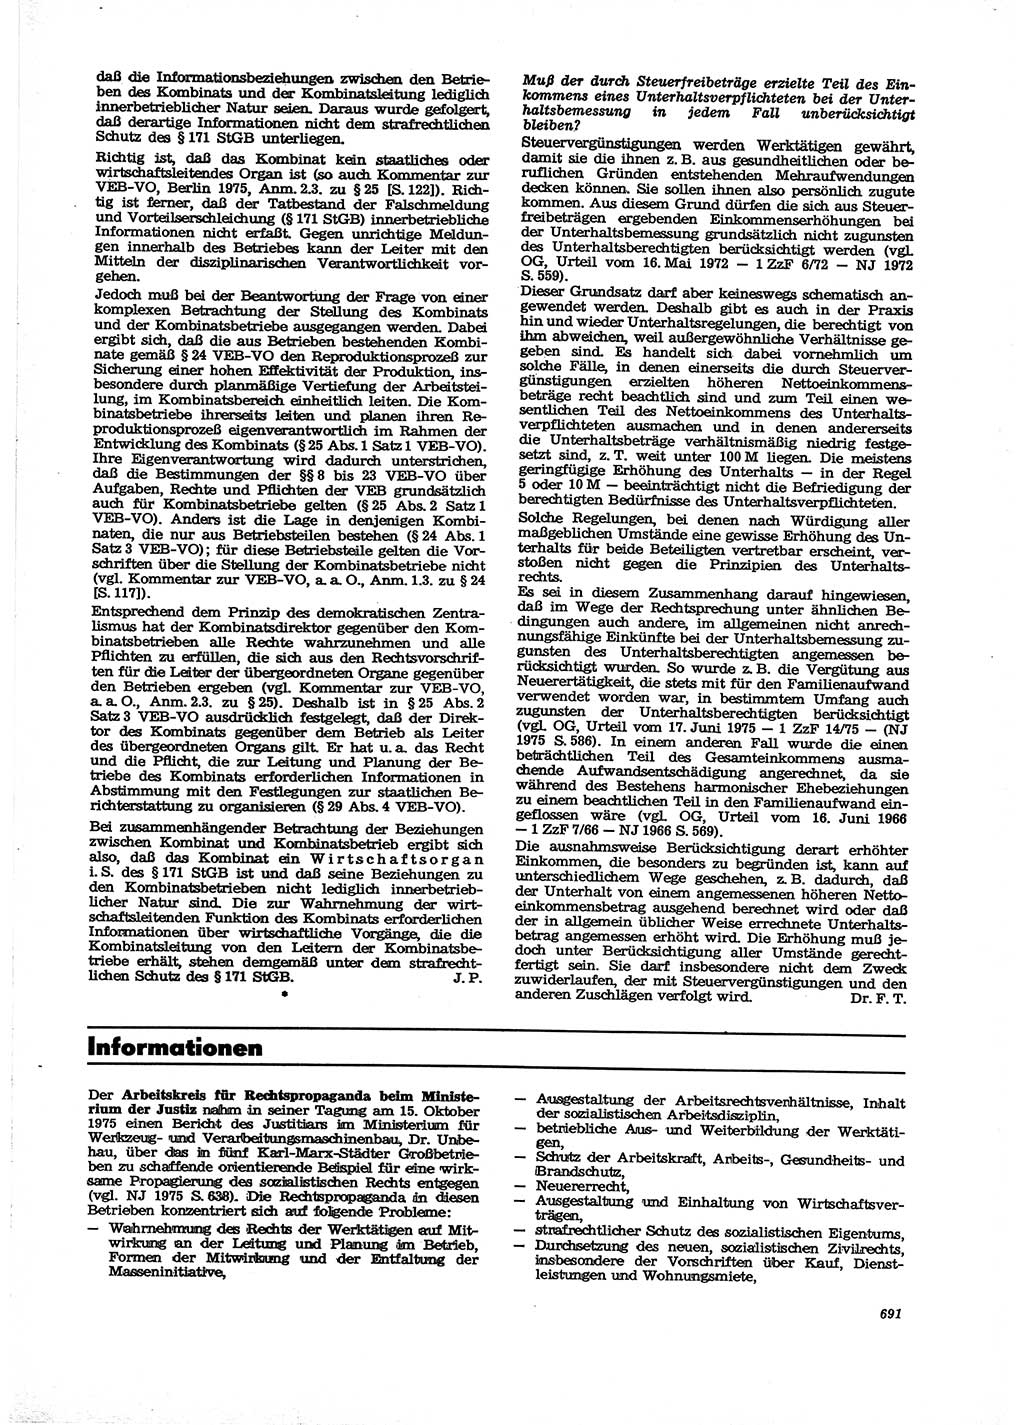 Neue Justiz (NJ), Zeitschrift für Recht und Rechtswissenschaft [Deutsche Demokratische Republik (DDR)], 29. Jahrgang 1975, Seite 691 (NJ DDR 1975, S. 691)